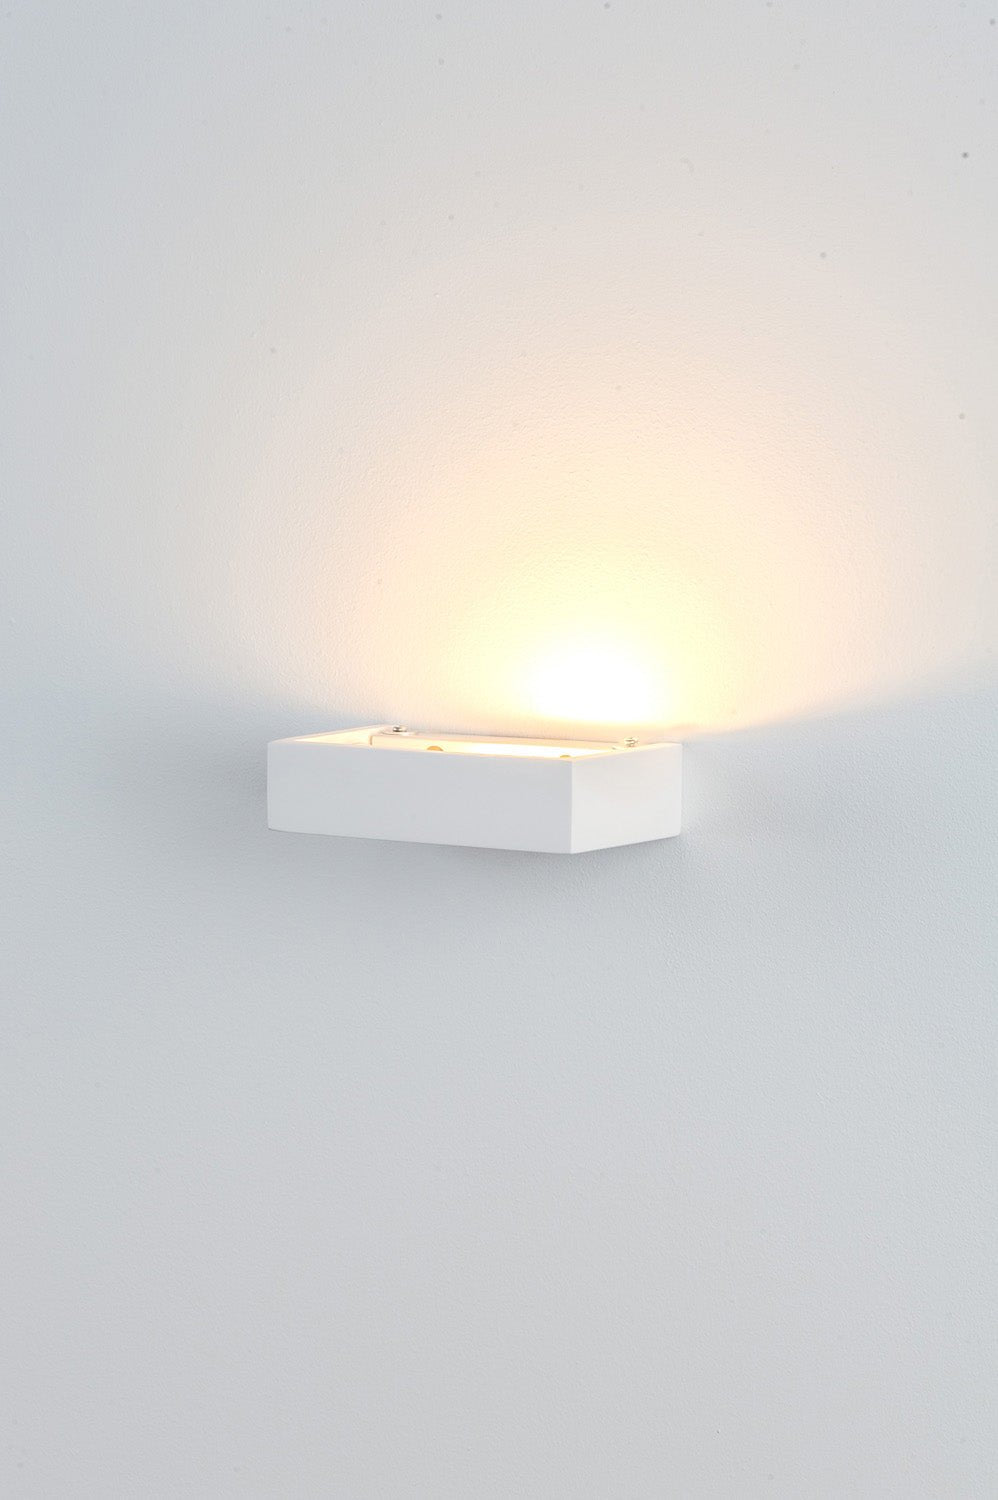 Sunrise Wall Light Plaster 150/200 LED White Havit Lighting - HV8069, HV8070 - Mases LightingHavit Lighting